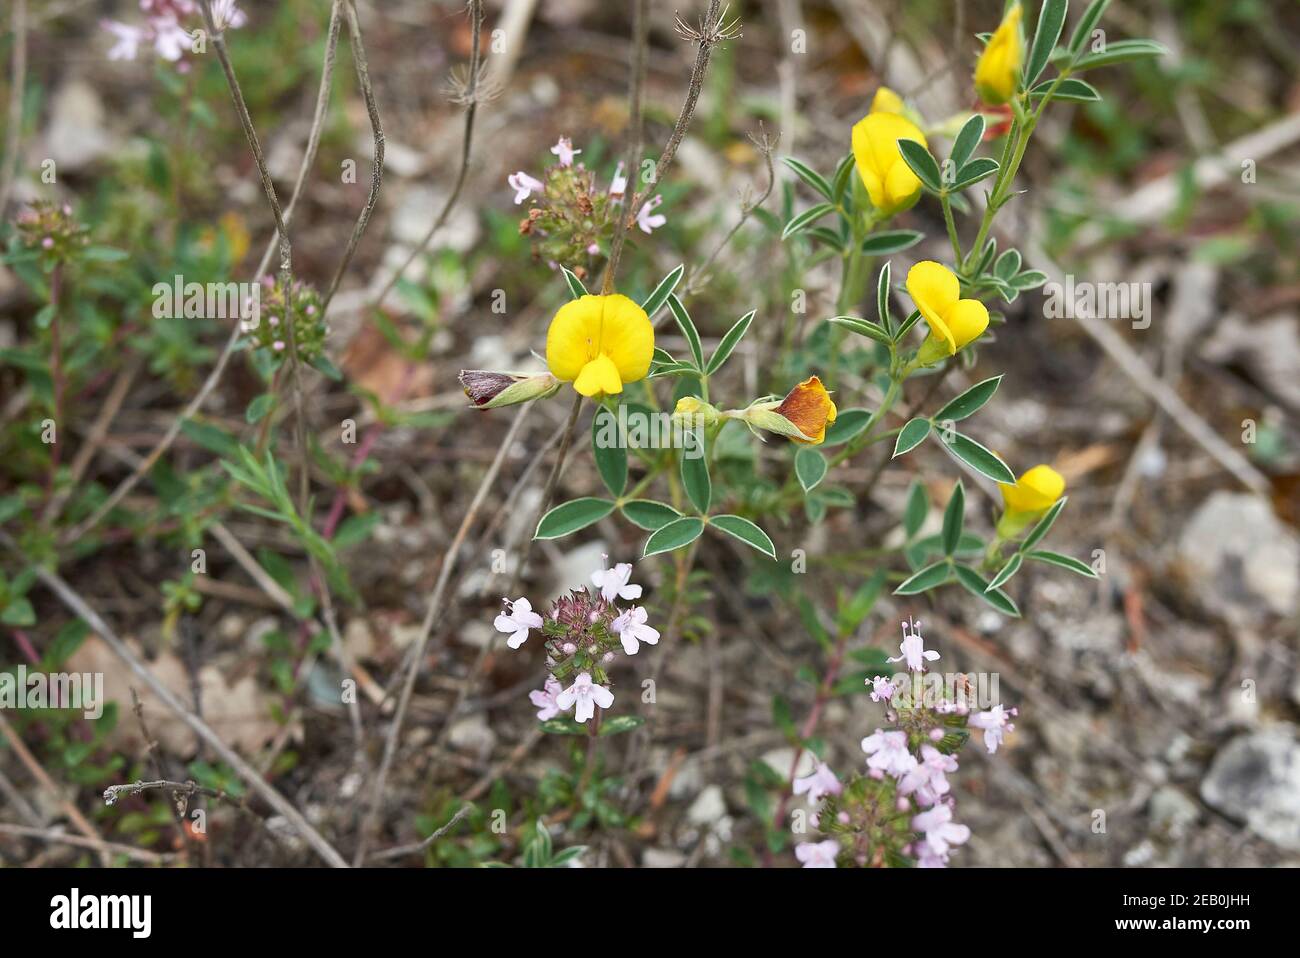 Argyrolobium zanonii yellow and orange flowers Stock Photo